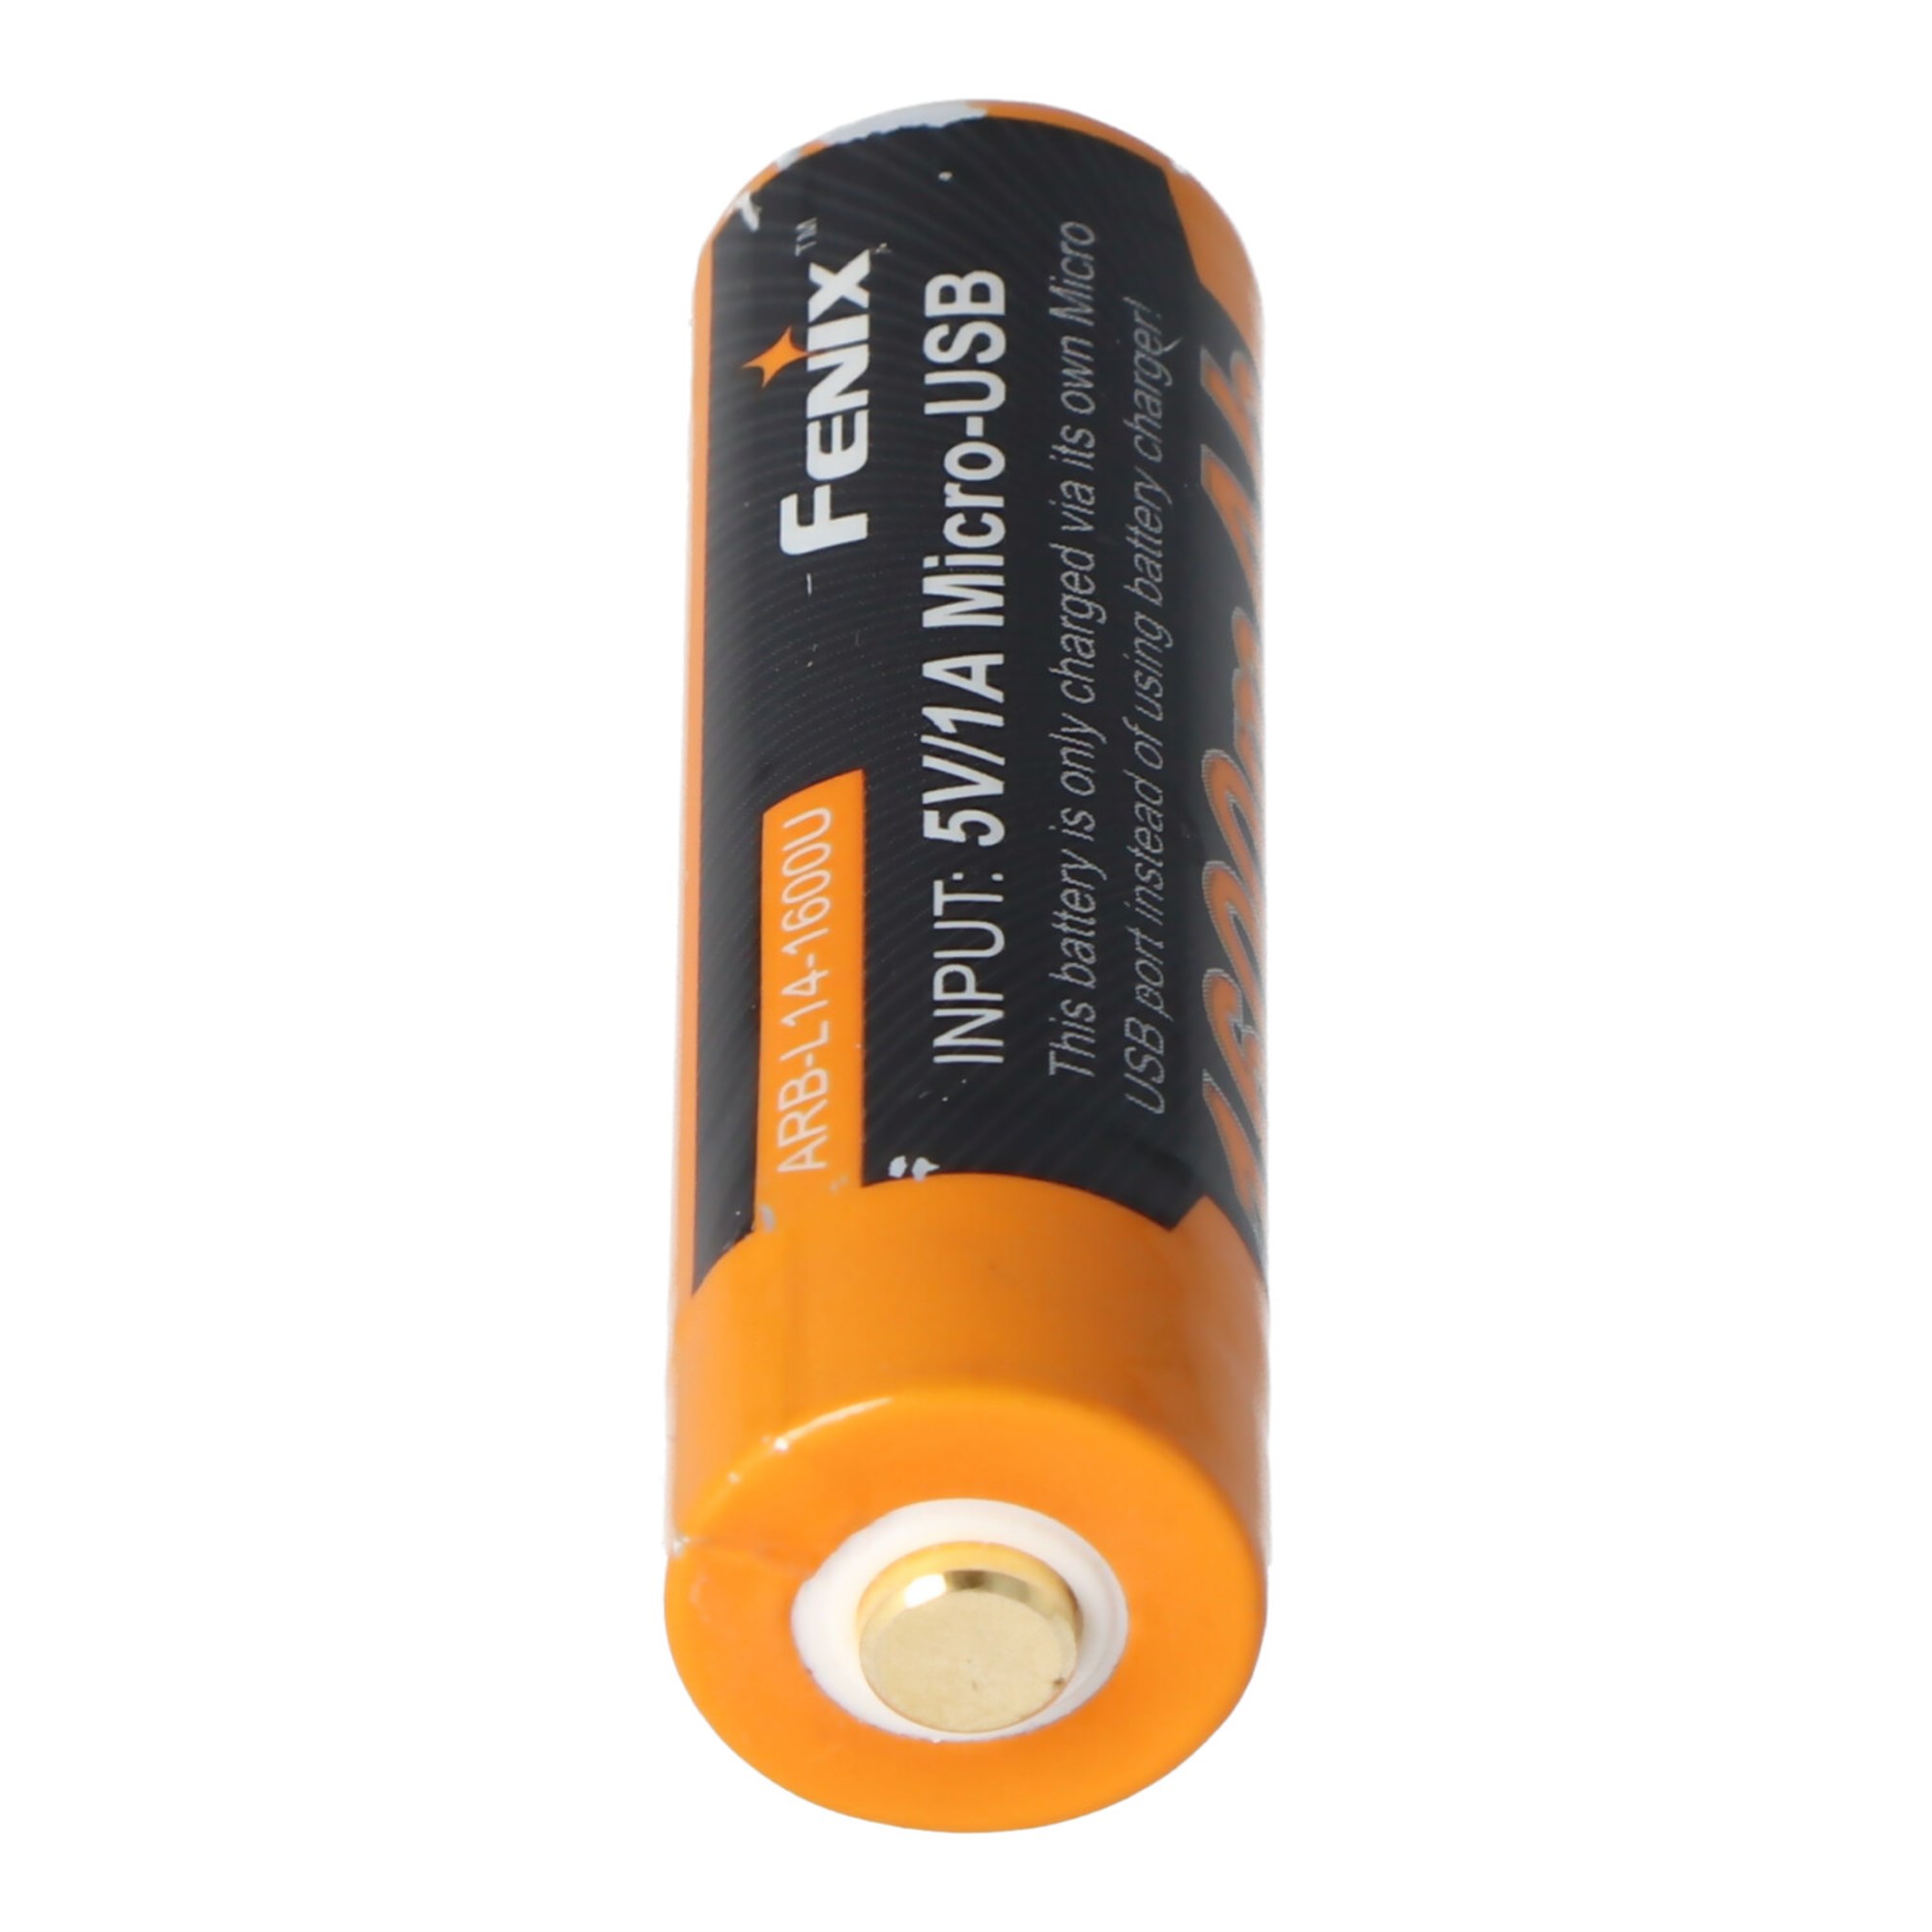 Li-ion şarj edilebilir pil Mignon AA LR6 1600 mAh ile 1.5 V çoklu USB şarj  fonksiyonu ile korunan, AccuSafe 1 parça